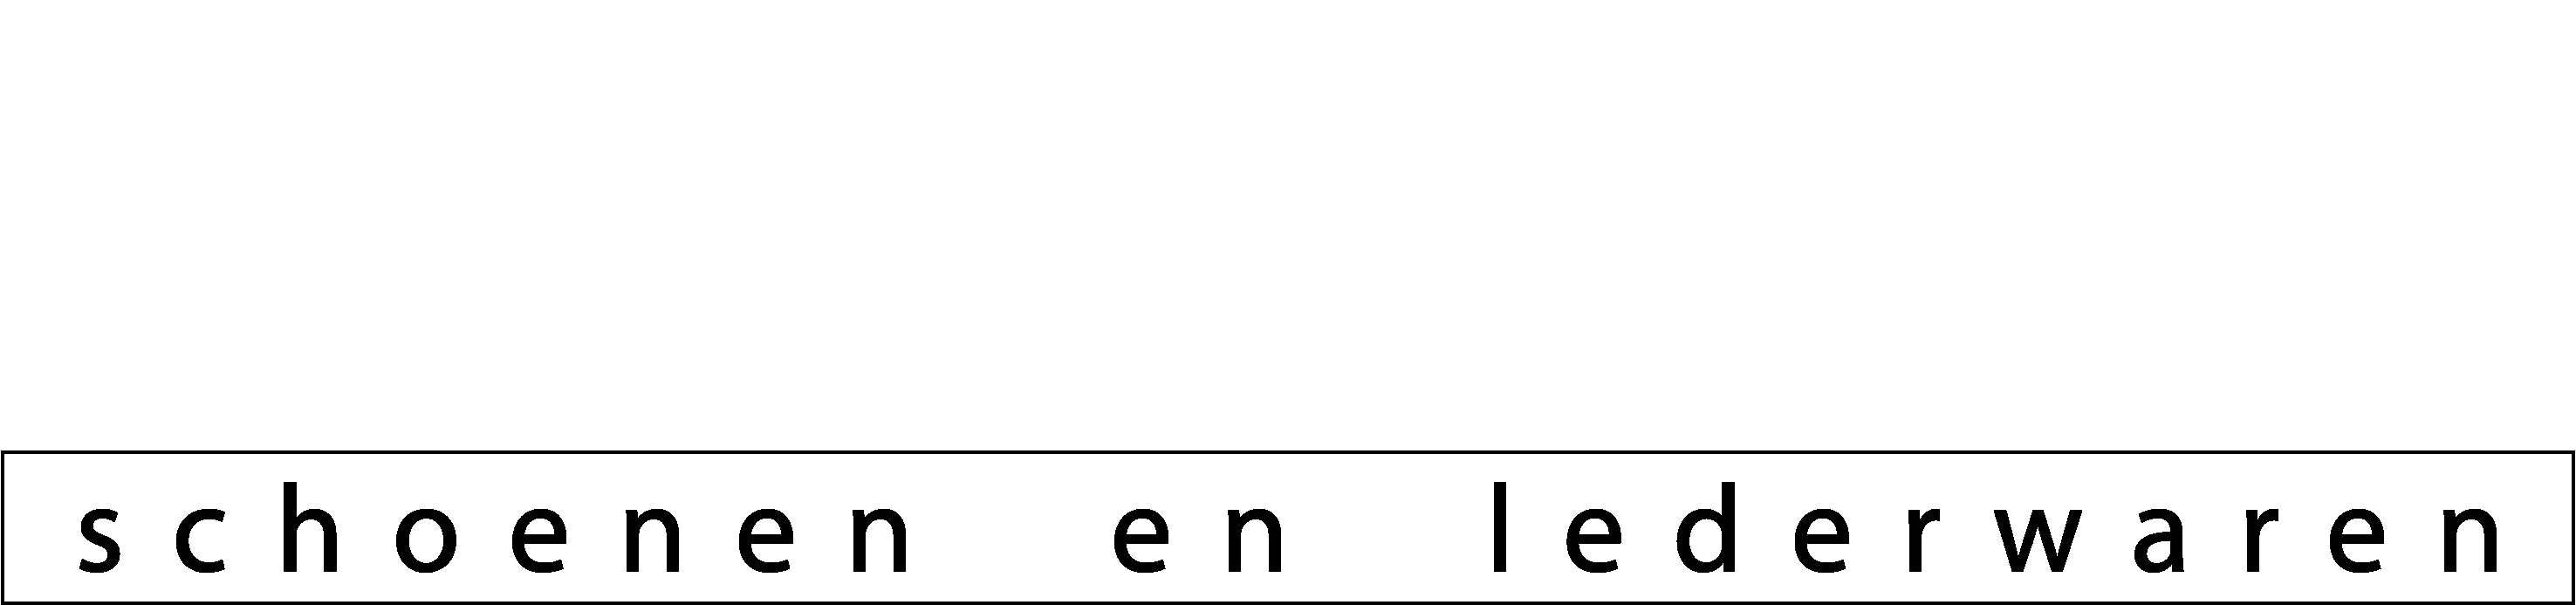 Van Hoye | Schoenen en lederwaren logo